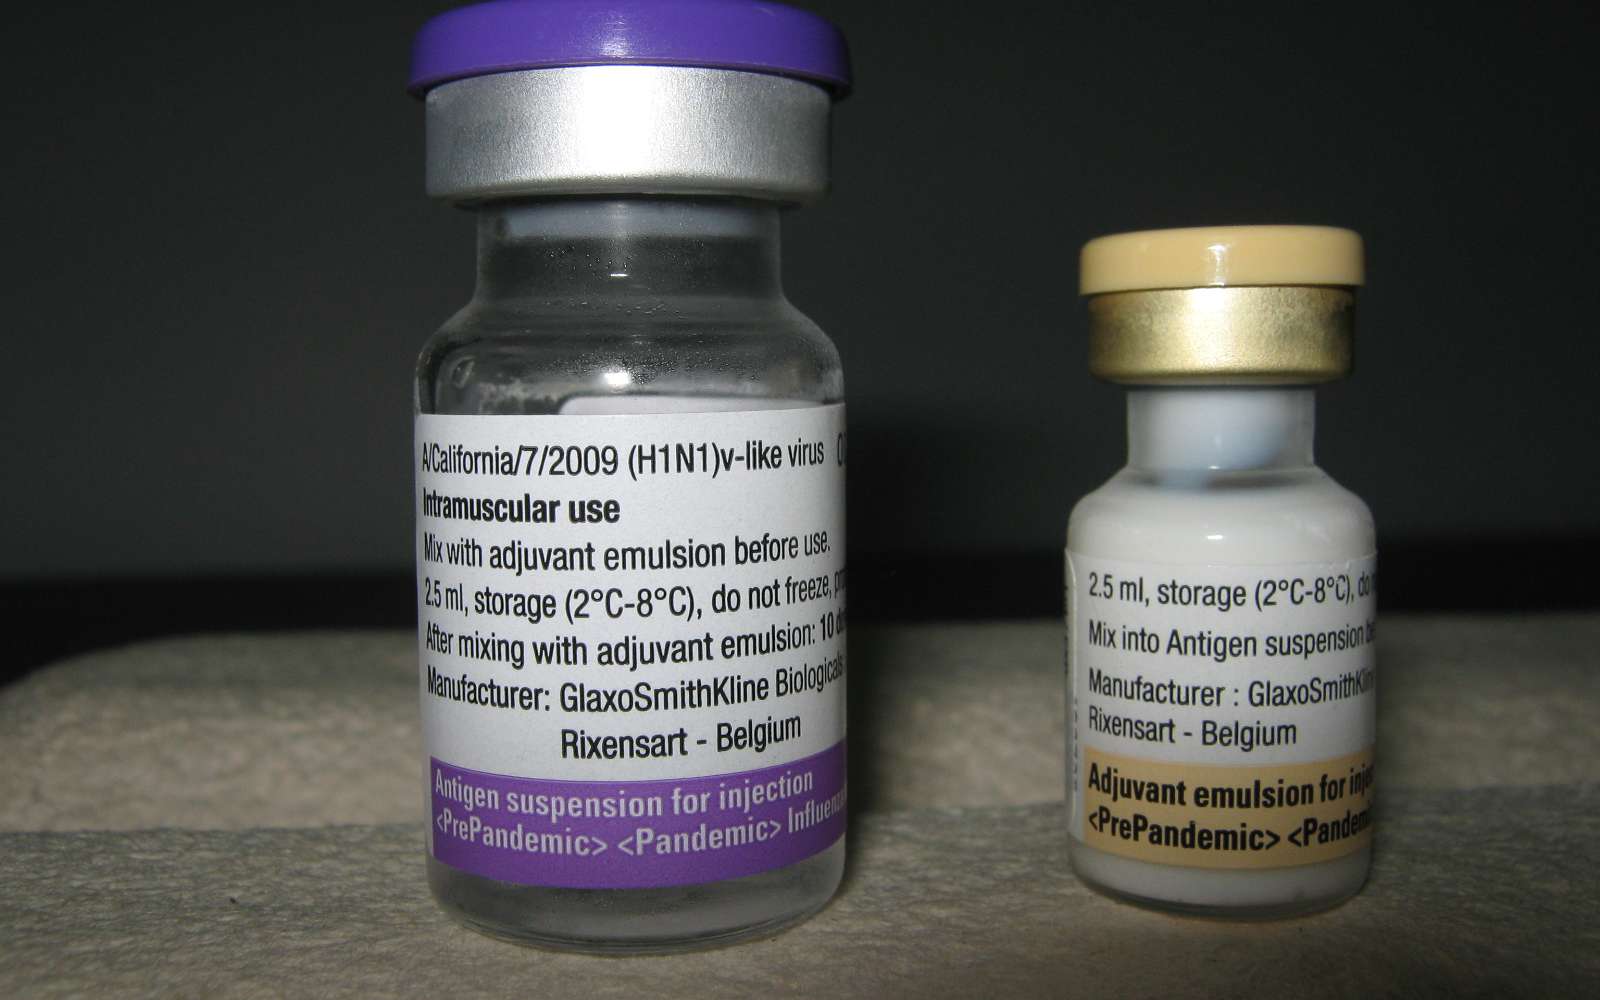 La vaccin Pandemrix, du laboratoire GSK (GlaxoSmithKline), adjuvanté, a été utilisé contre le virus A(H1N1). © Grook Da Oger / Licence Commons